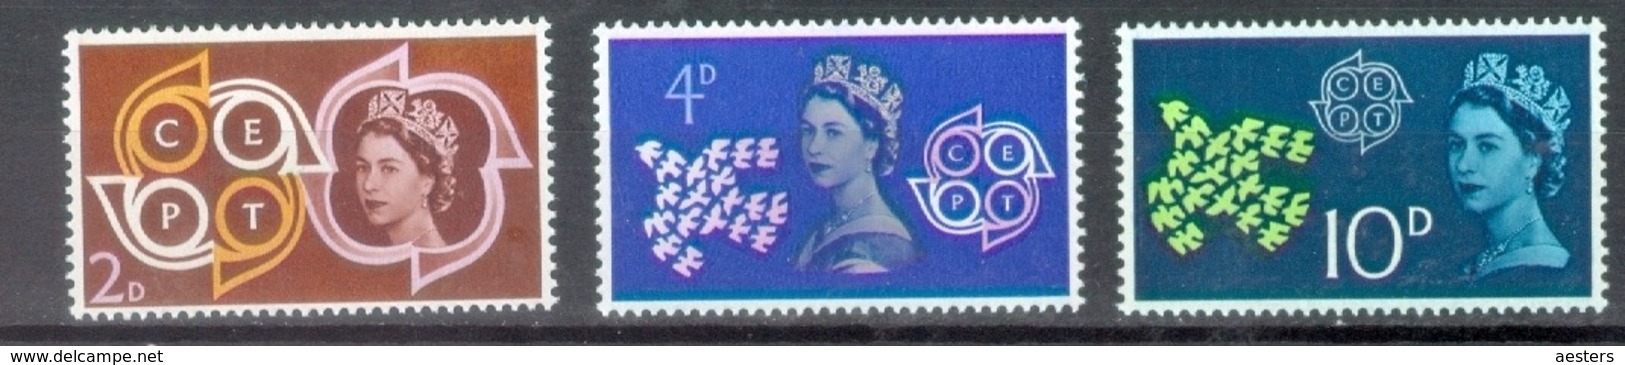 United Kingdom 1961; Europa Cept, Michel 346-348.** (MNH) - 1961